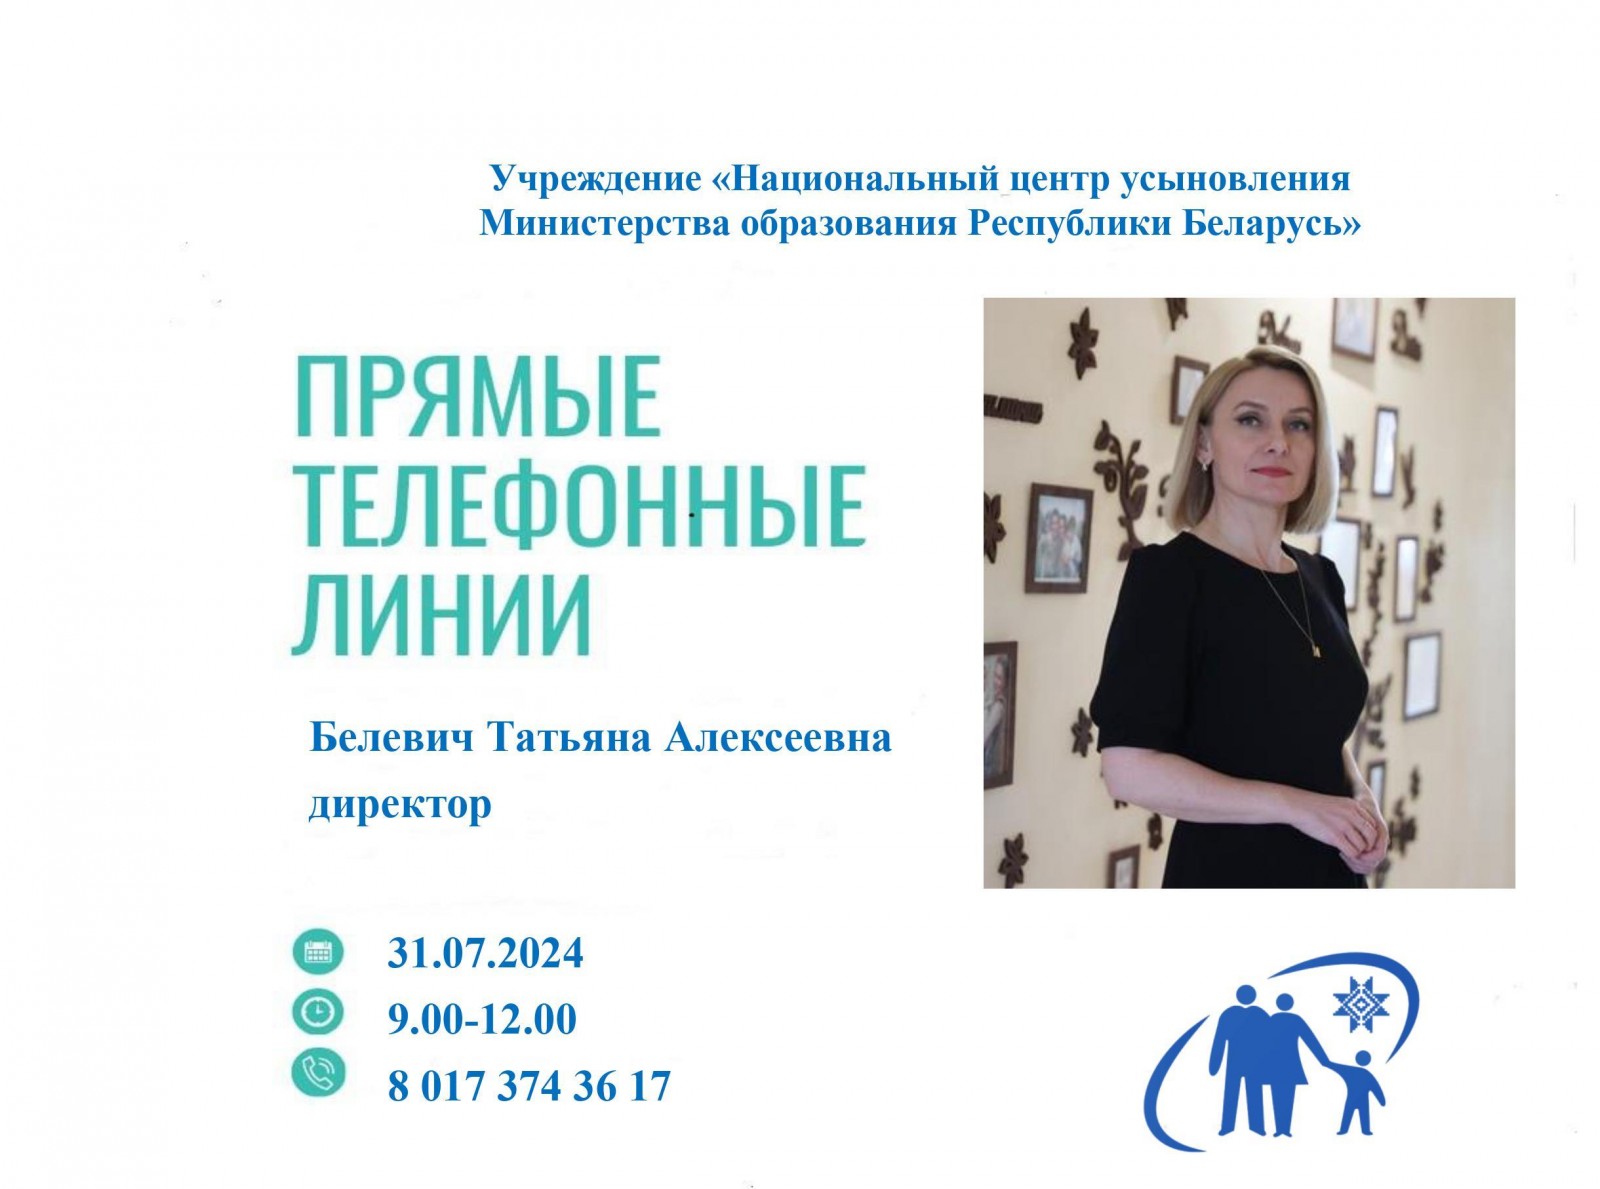 31 июля «прямую телефонную линию» проведет директор Национального центра усыновления Татьяна  Алексеевна Белевич